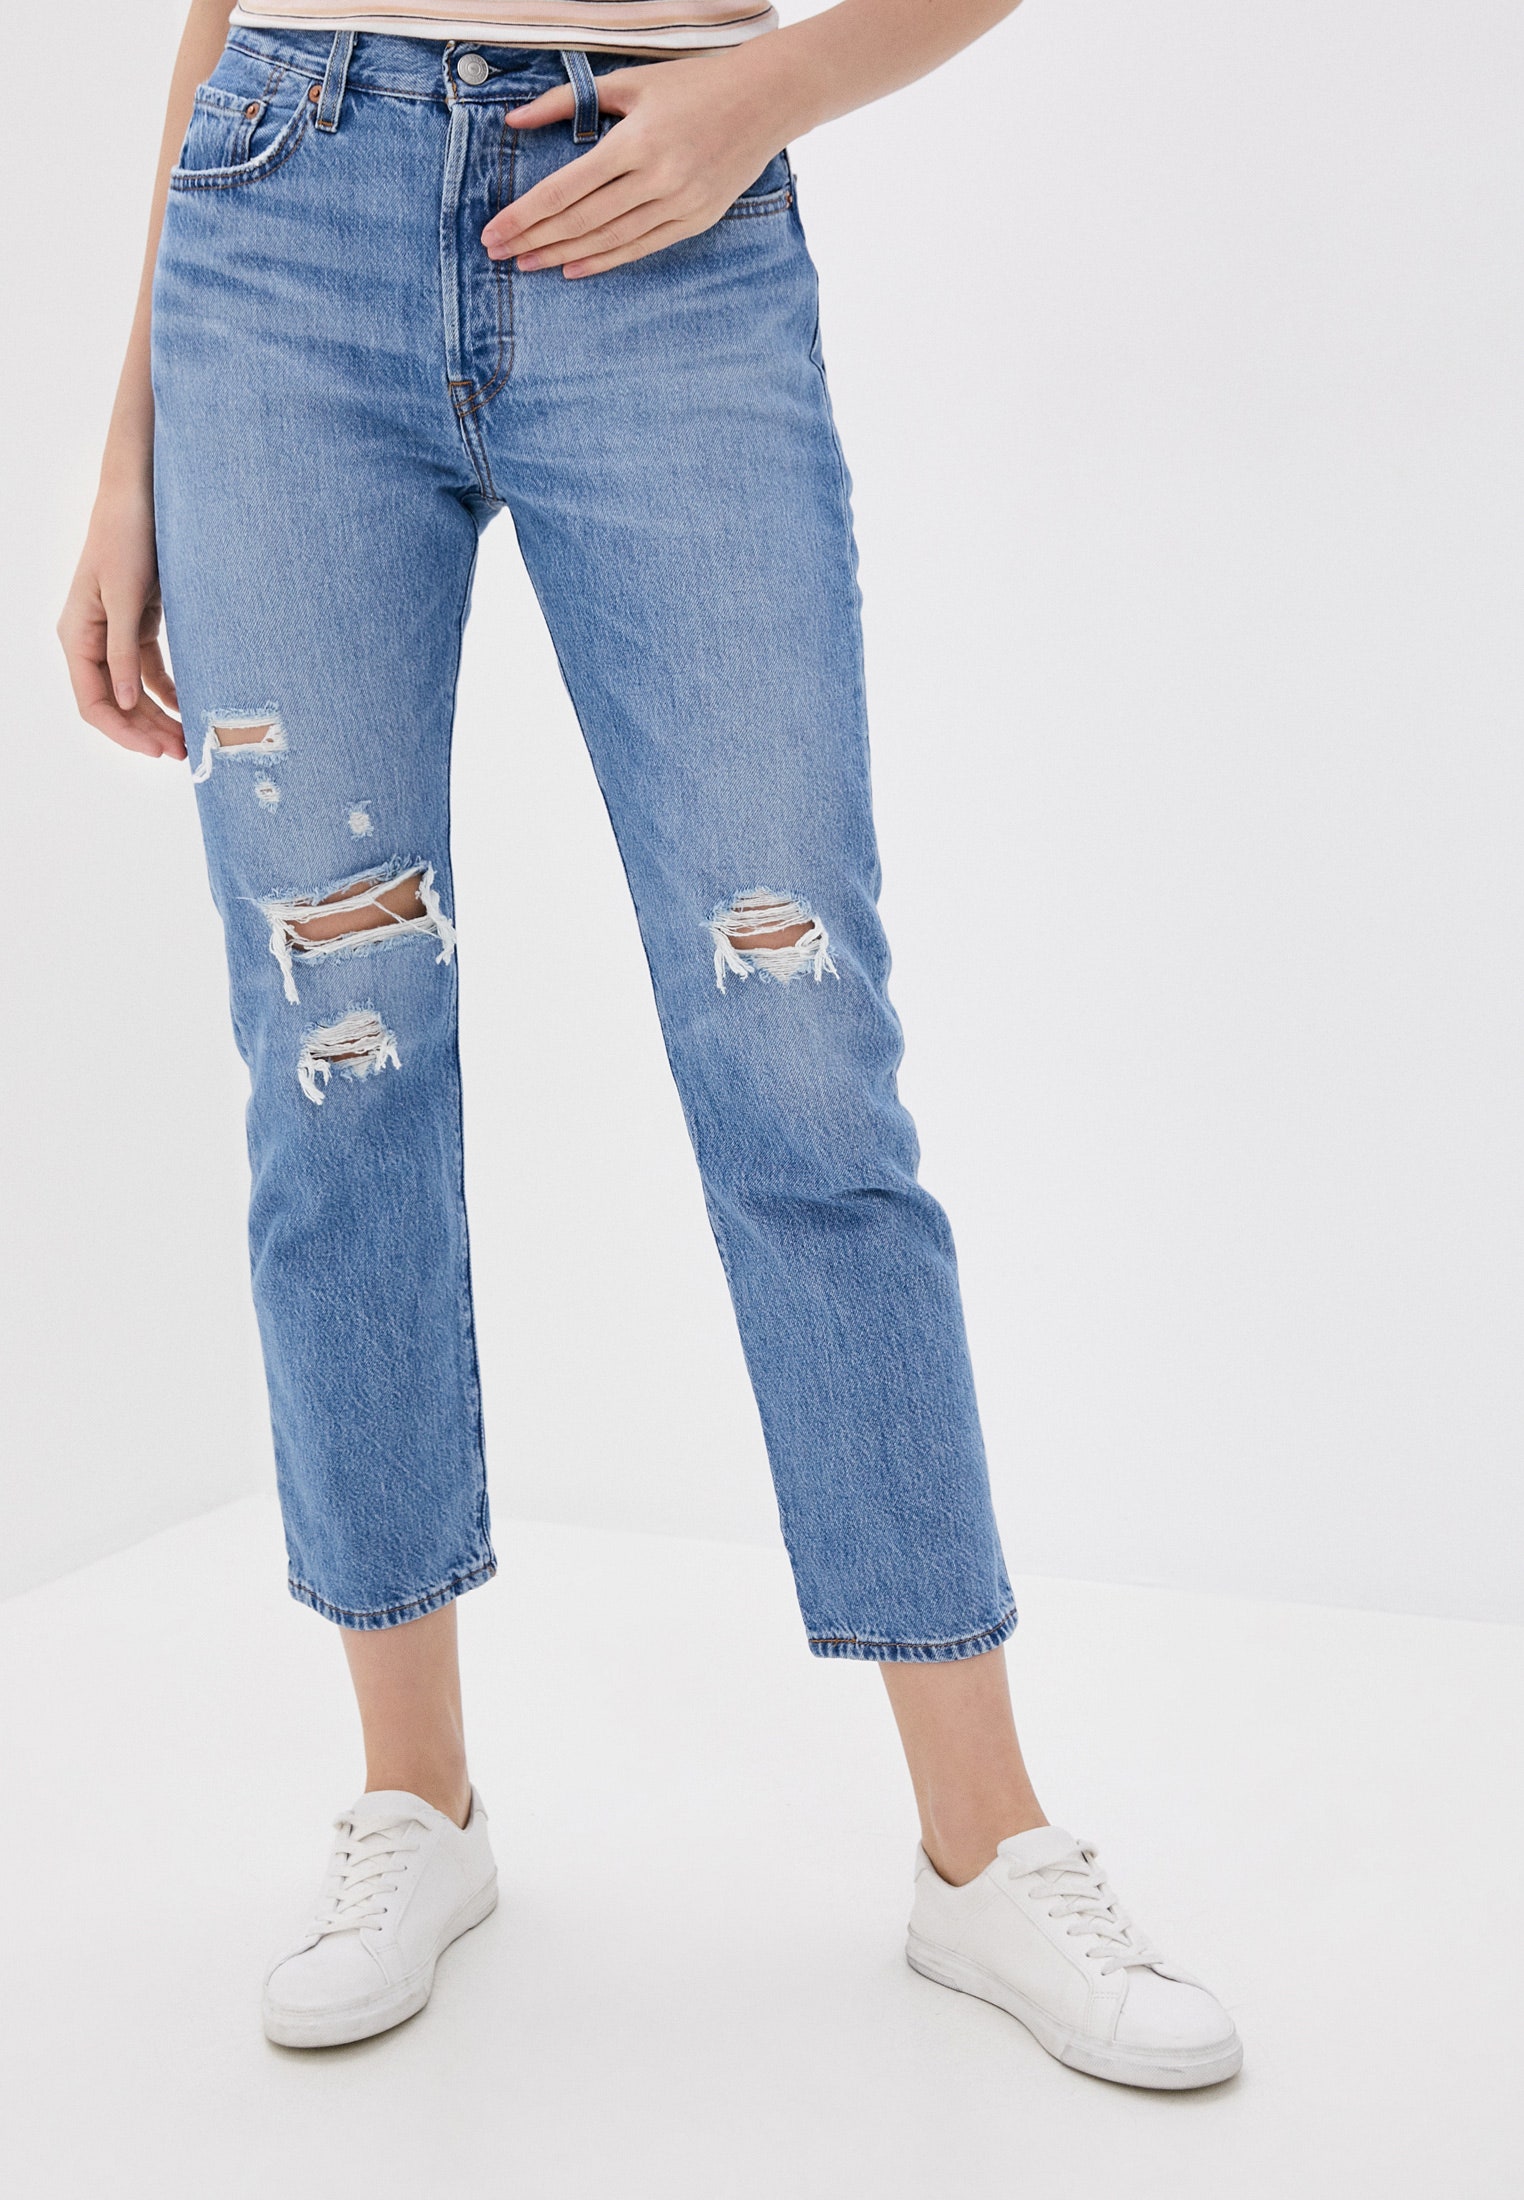 Образ Рванные джинсы с термобельем как у Джиджи Хадид